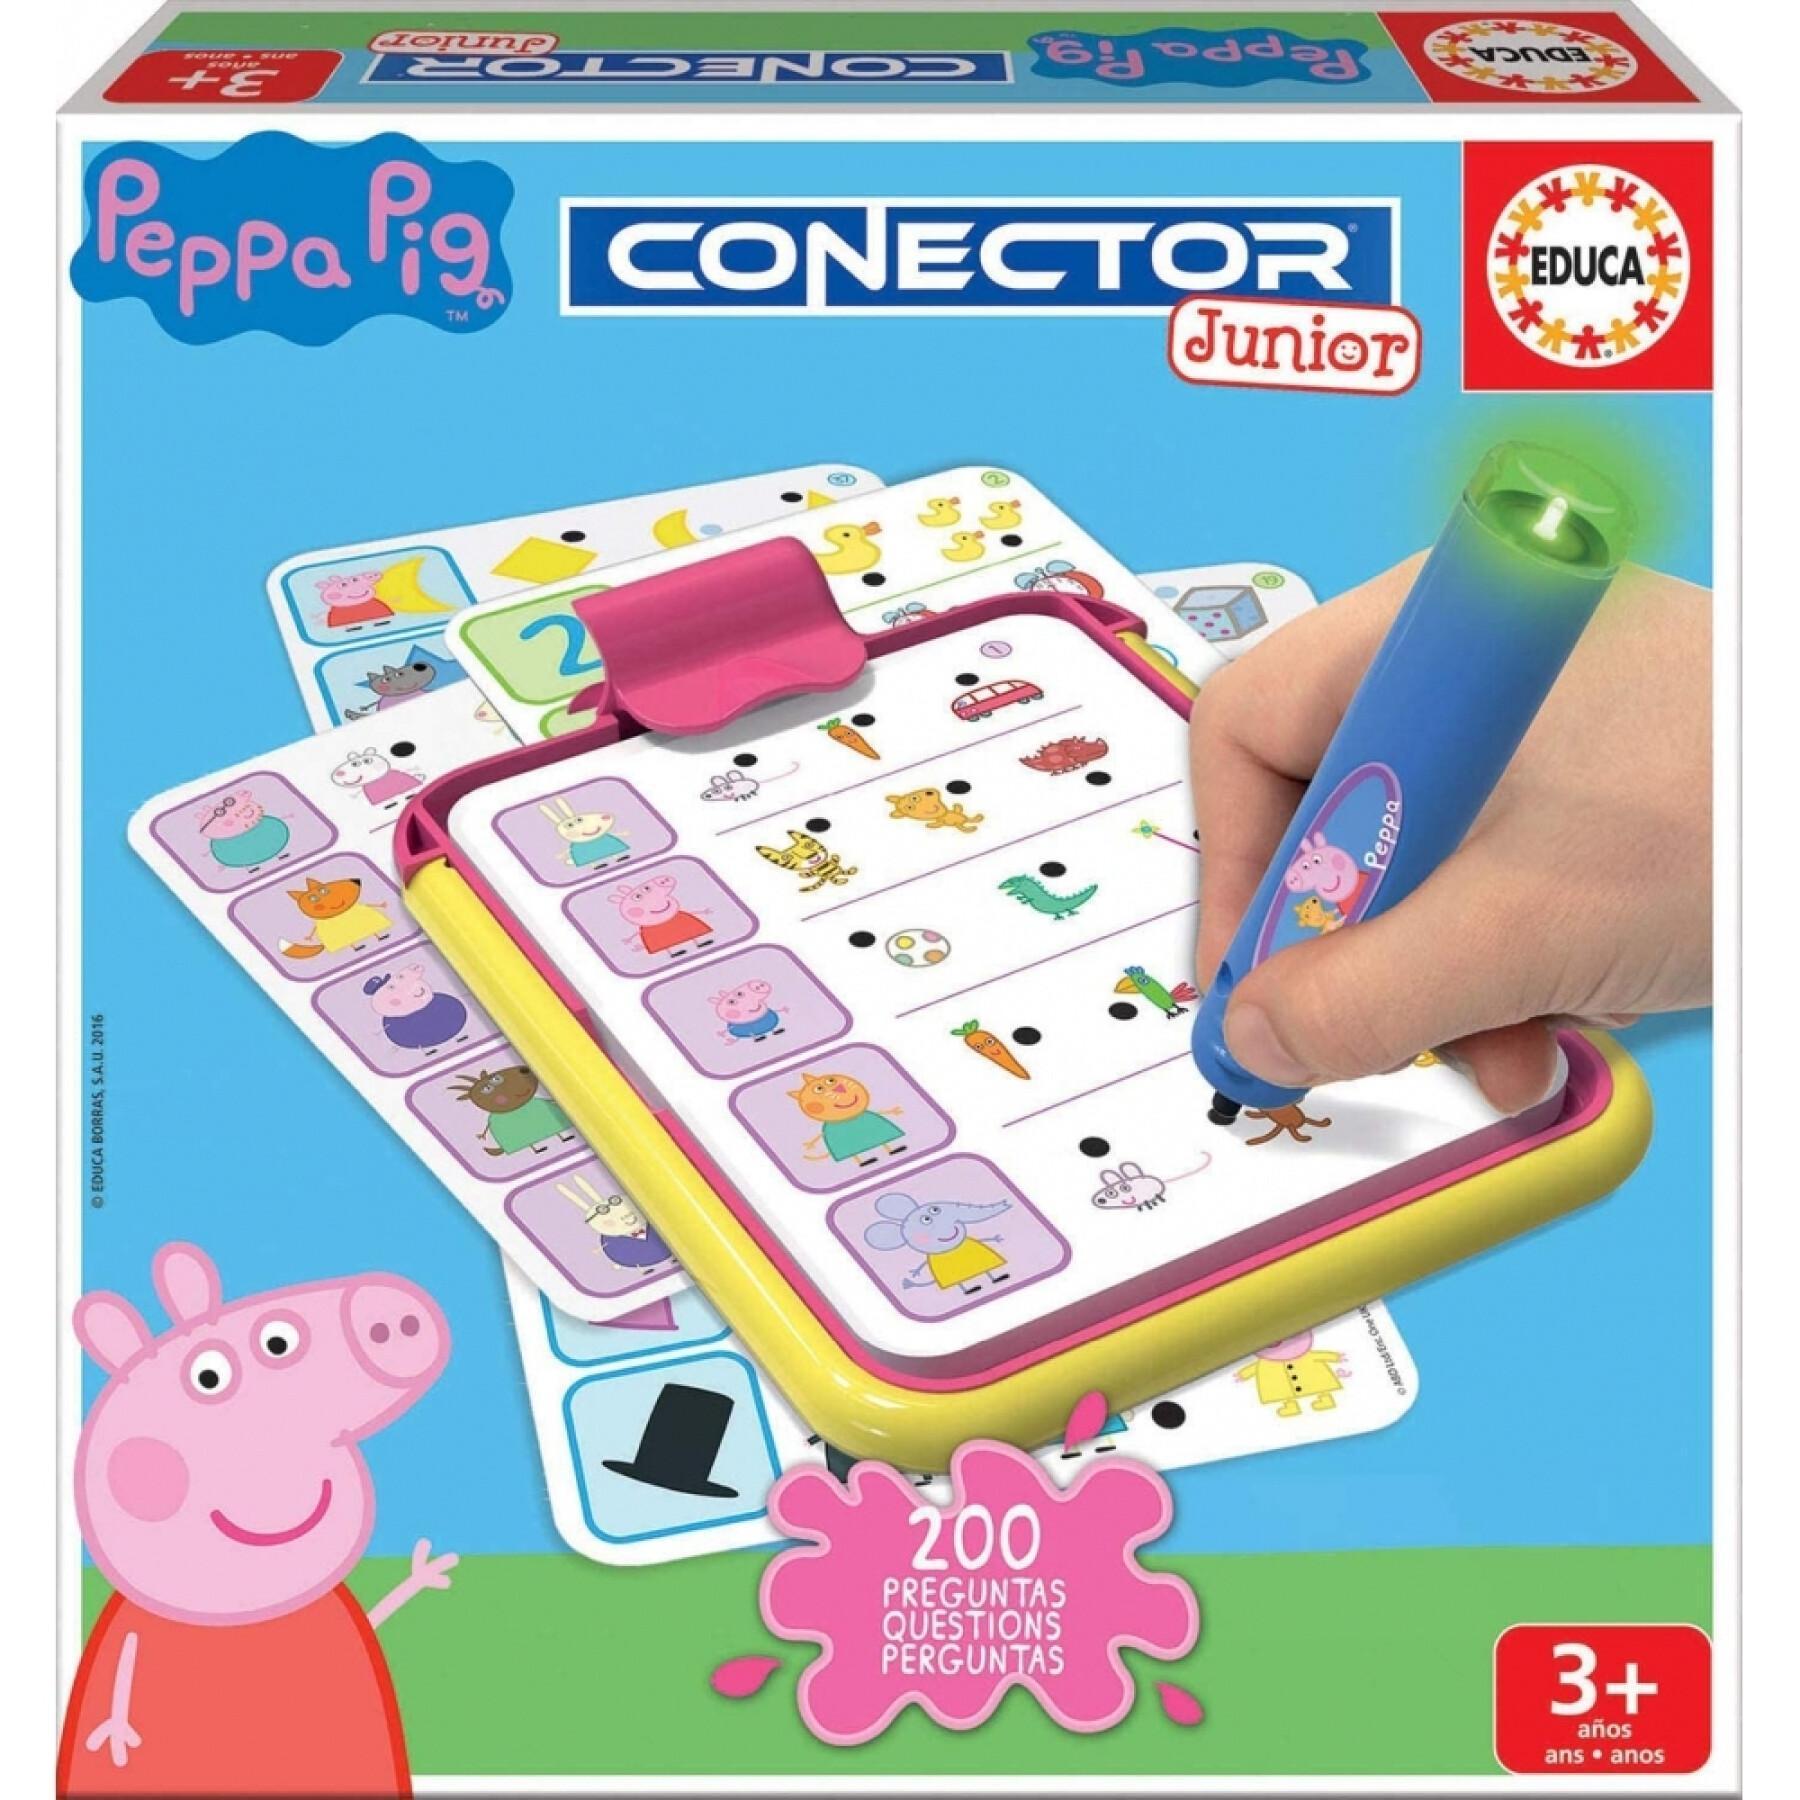 Juegos educativos de preguntas y respuestas Peppa Pig Connector